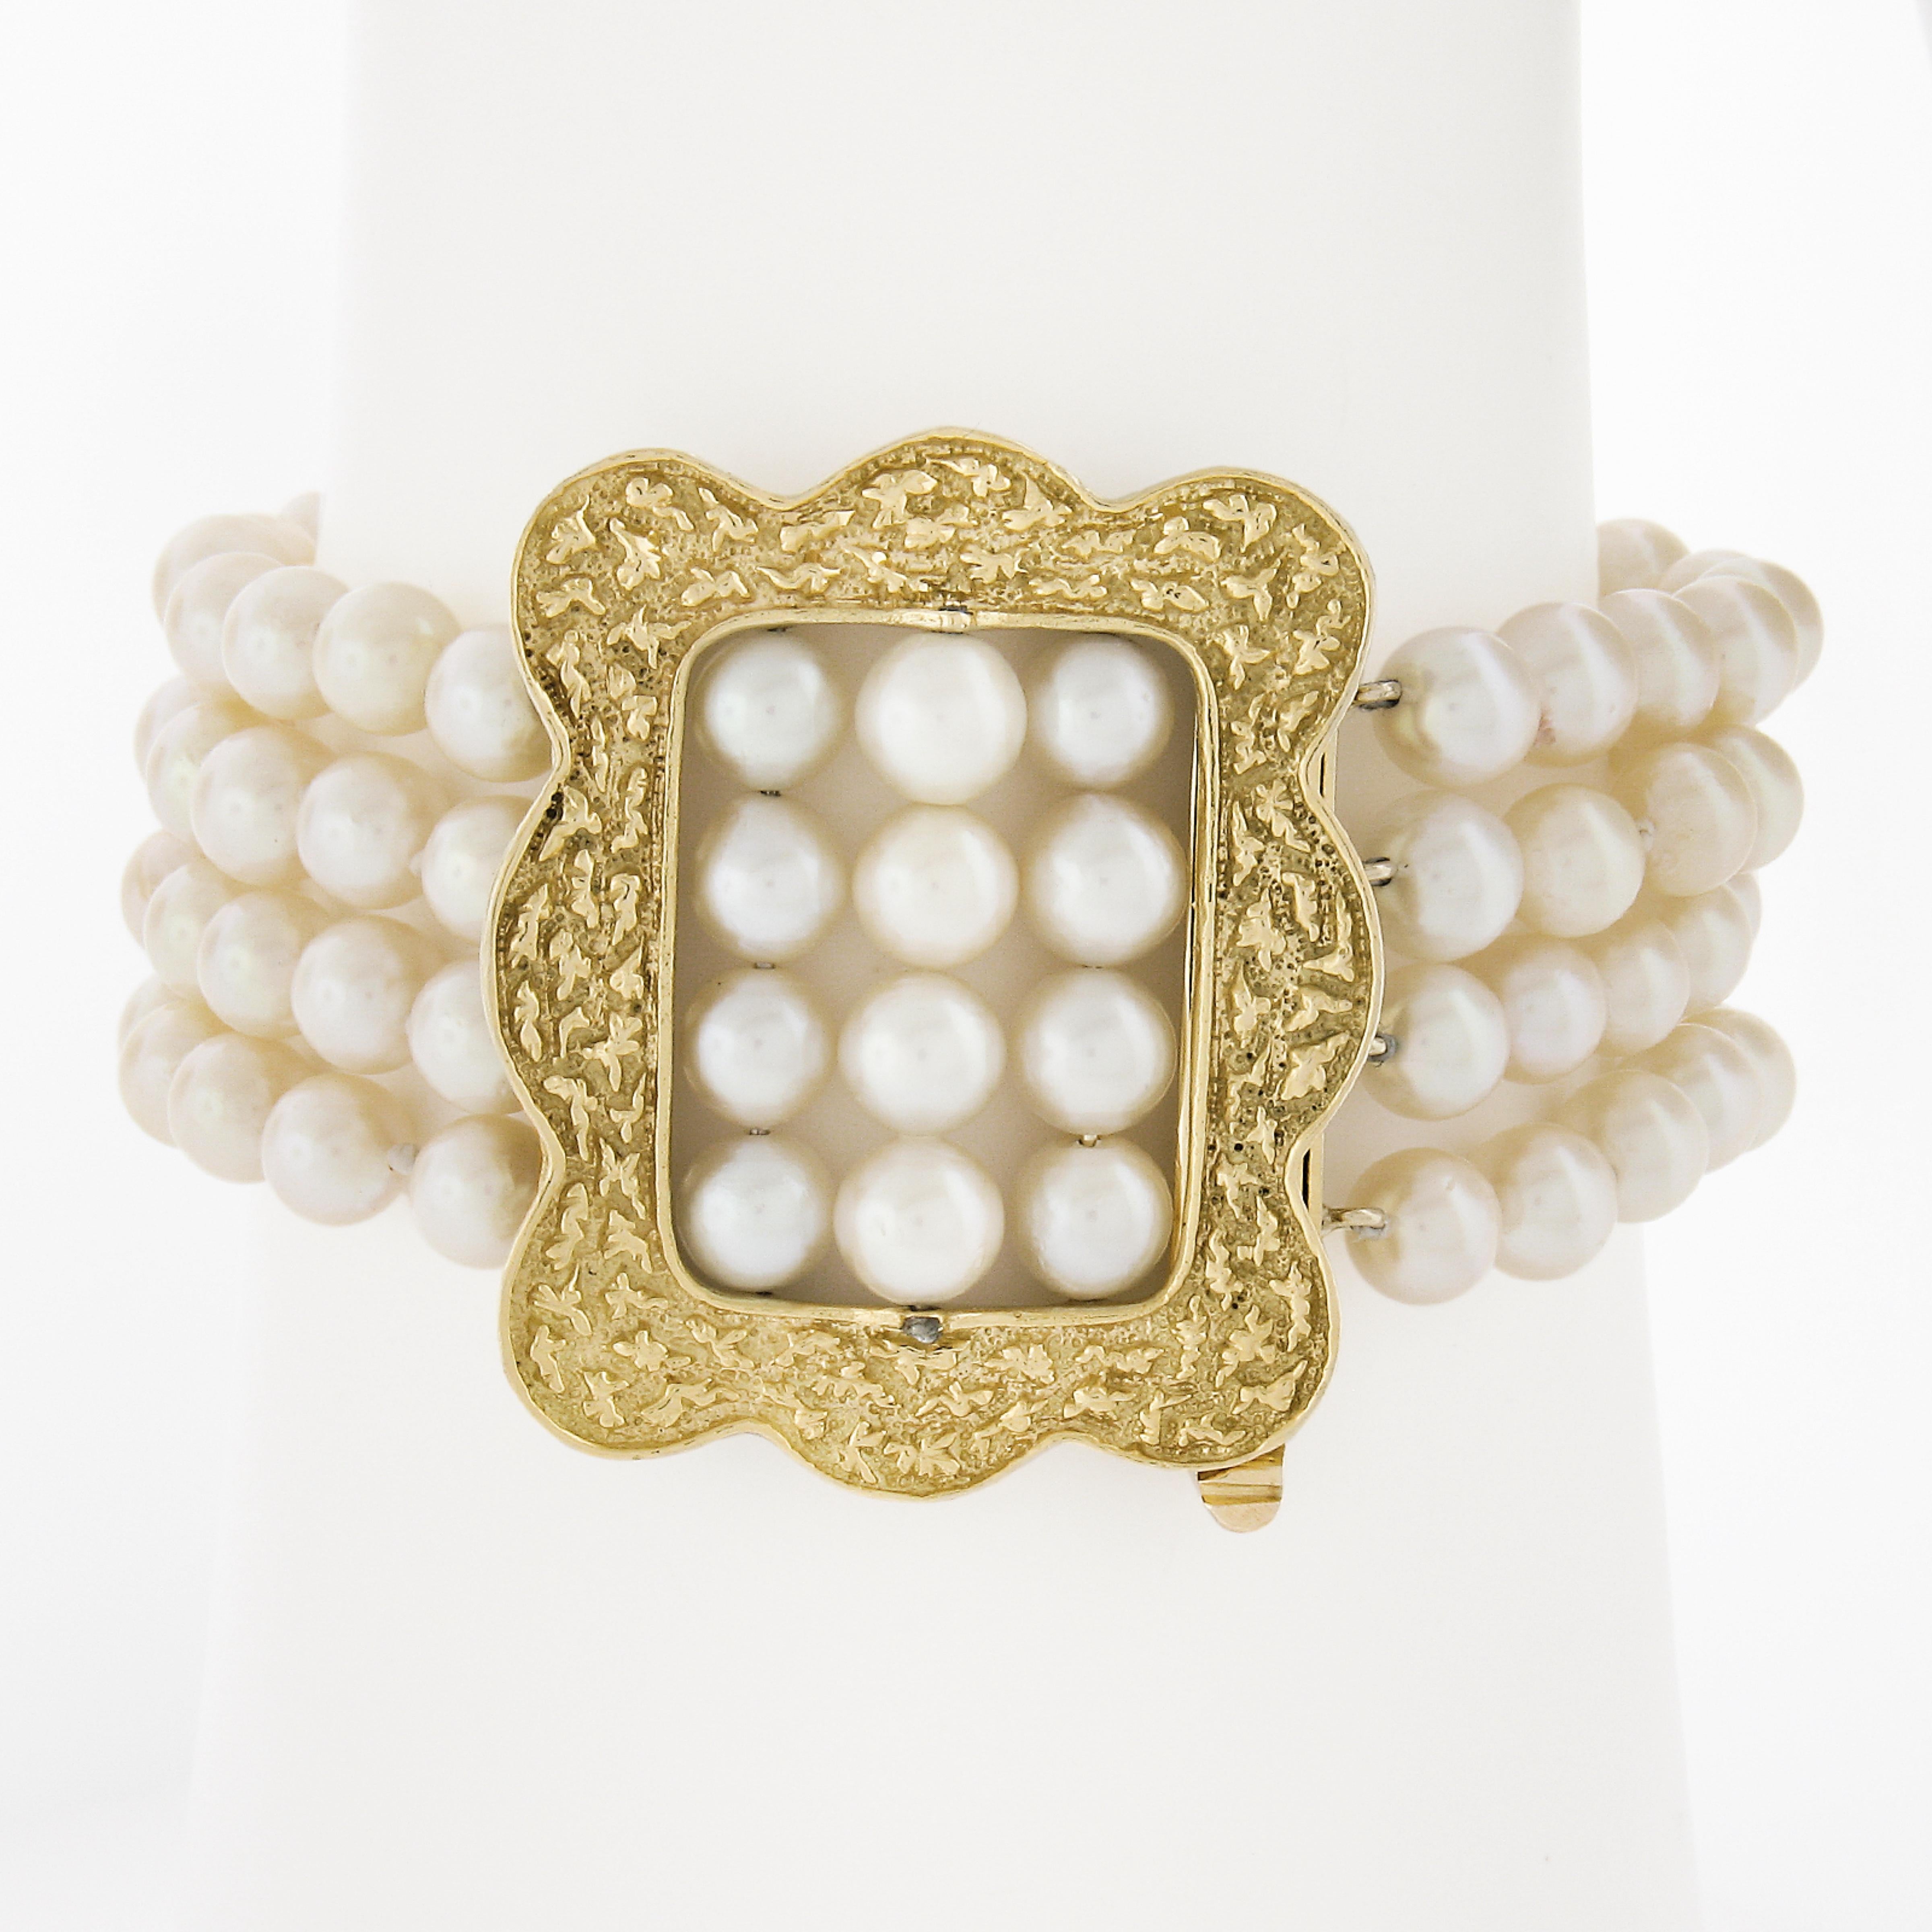 --Pierre(s) :...
108 Perles de Culture Authentiques - forme ronde - enfilées - belle couleur blanche crémeuse avec des pierres roses - bon lustre - 5-6mm chacune approx.

Matière : Fermoir en or jaune 14K massif
Poids : 44,02 grammes
Type de perles